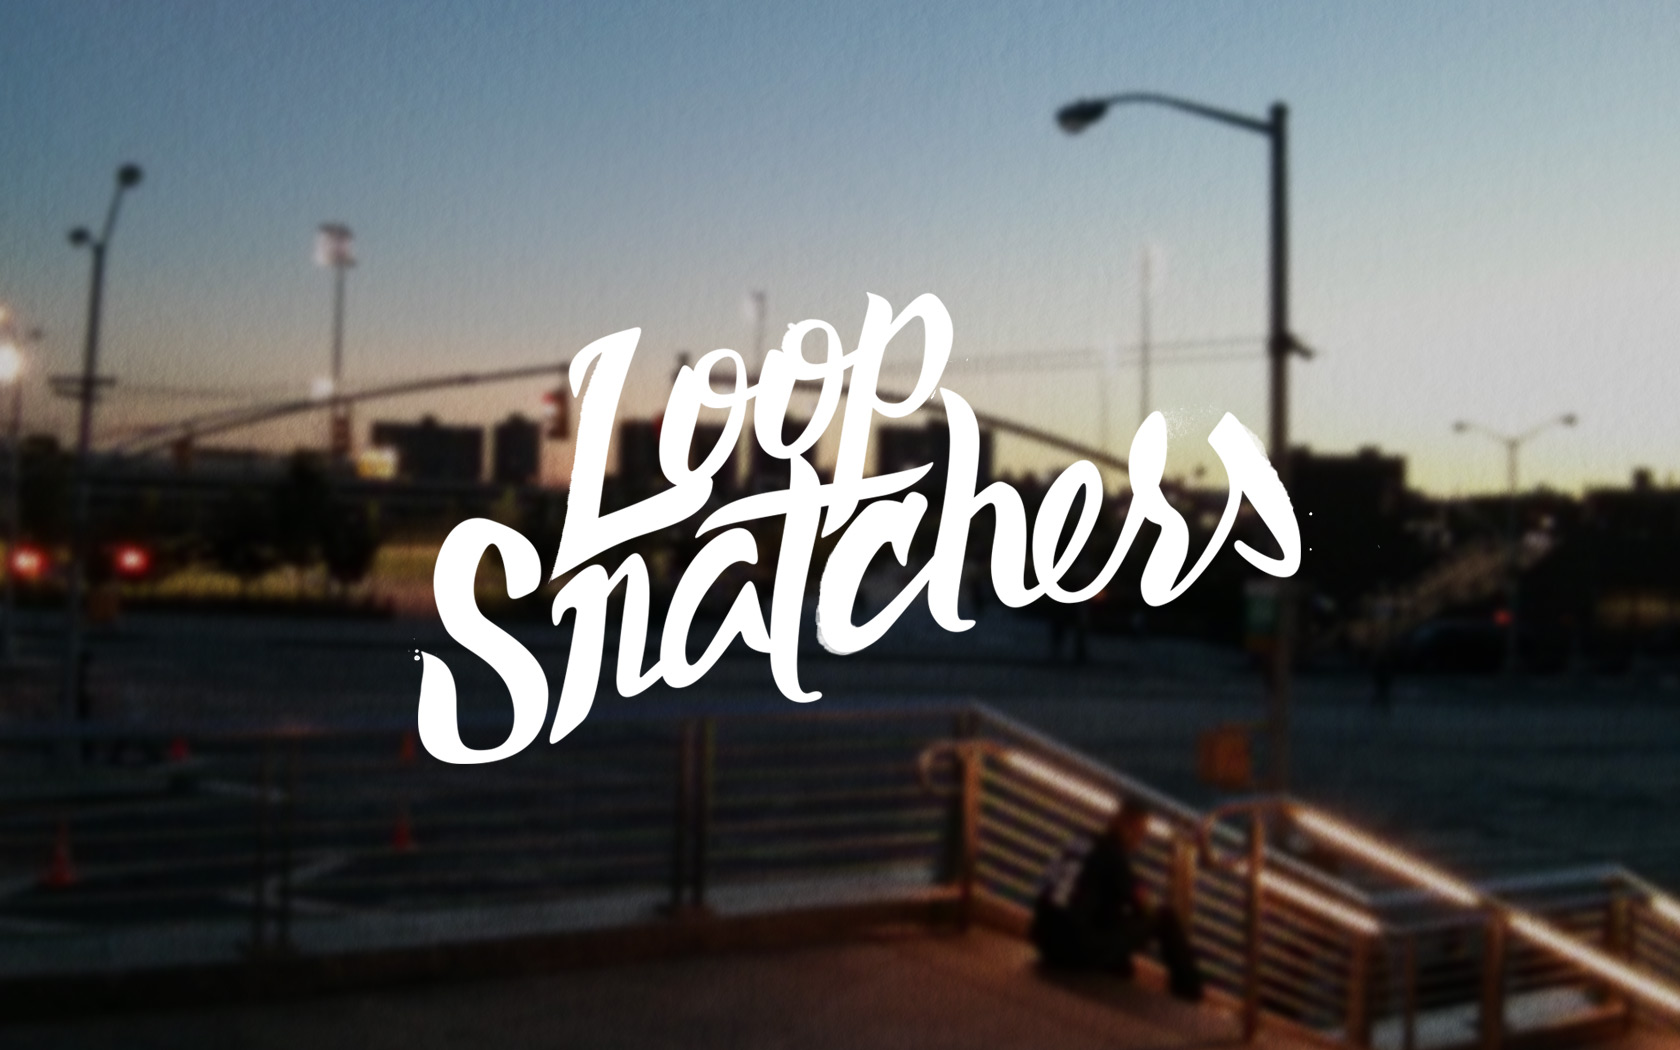 Loop-Snatchers